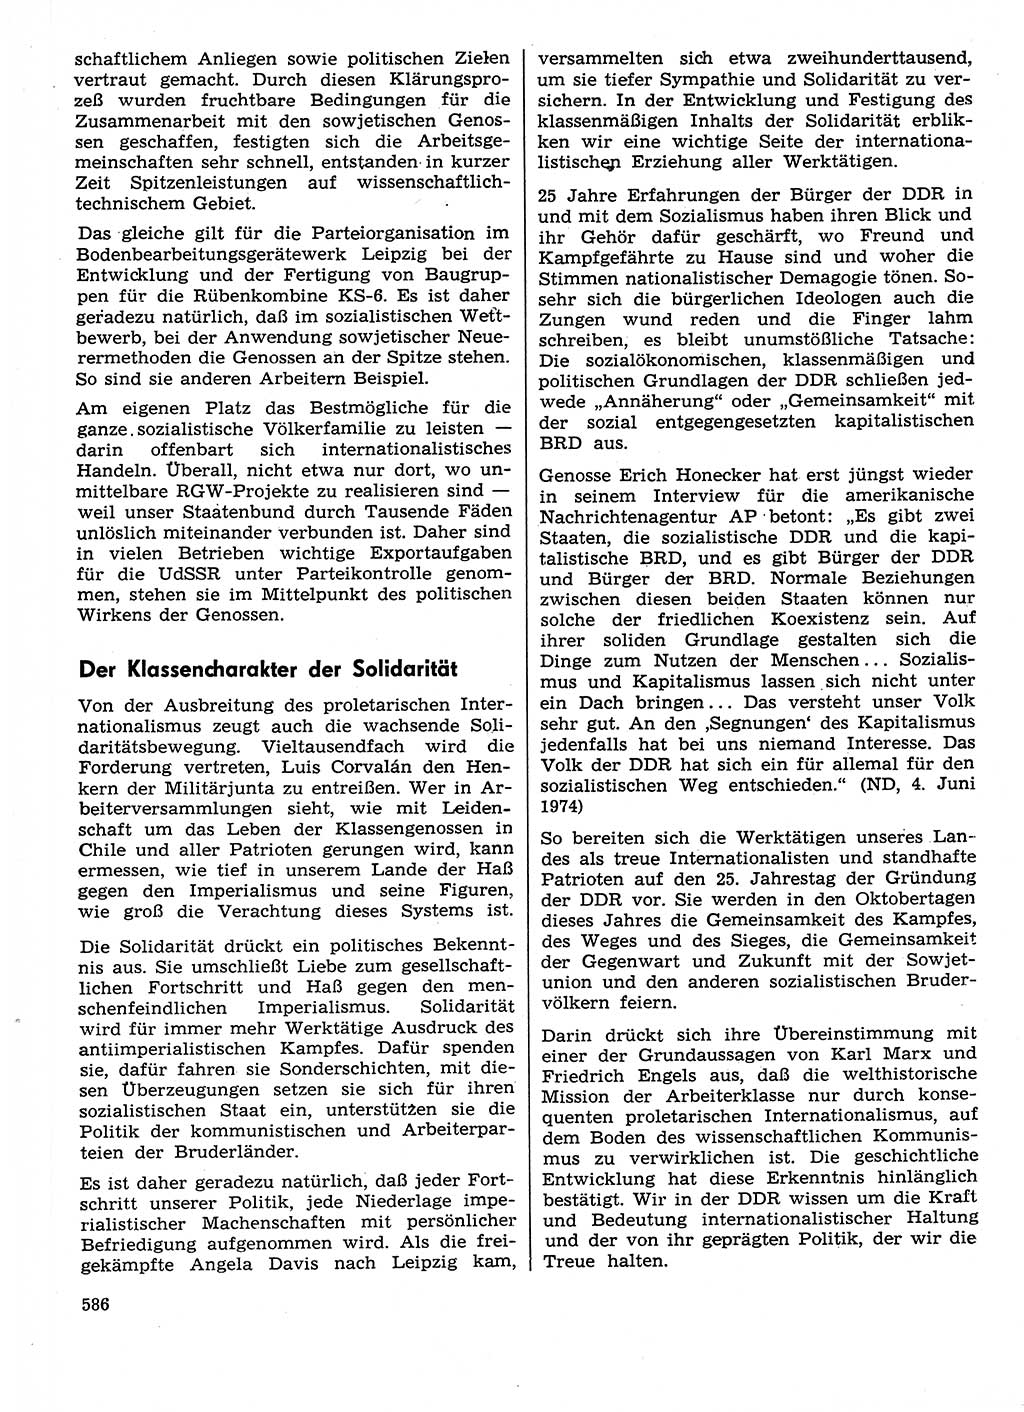 Neuer Weg (NW), Organ des Zentralkomitees (ZK) der SED (Sozialistische Einheitspartei Deutschlands) für Fragen des Parteilebens, 29. Jahrgang [Deutsche Demokratische Republik (DDR)] 1974, Seite 586 (NW ZK SED DDR 1974, S. 586)